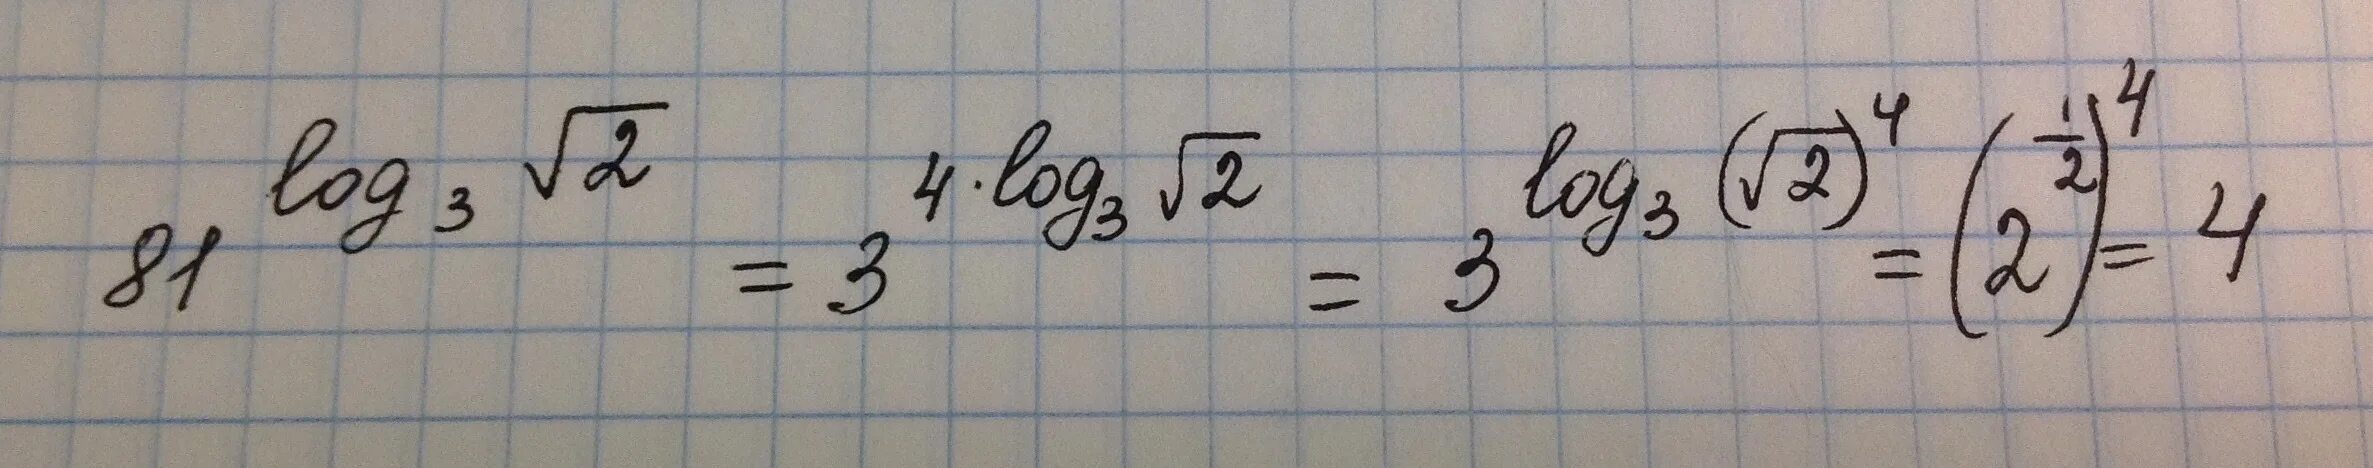 2 4 корень 81. Логарифм по основанию корень из 3. Логарифм по основанию корень из 2. Логарифм корень из 3 по основанию 2. Логарифм корня из трех по основанию три.